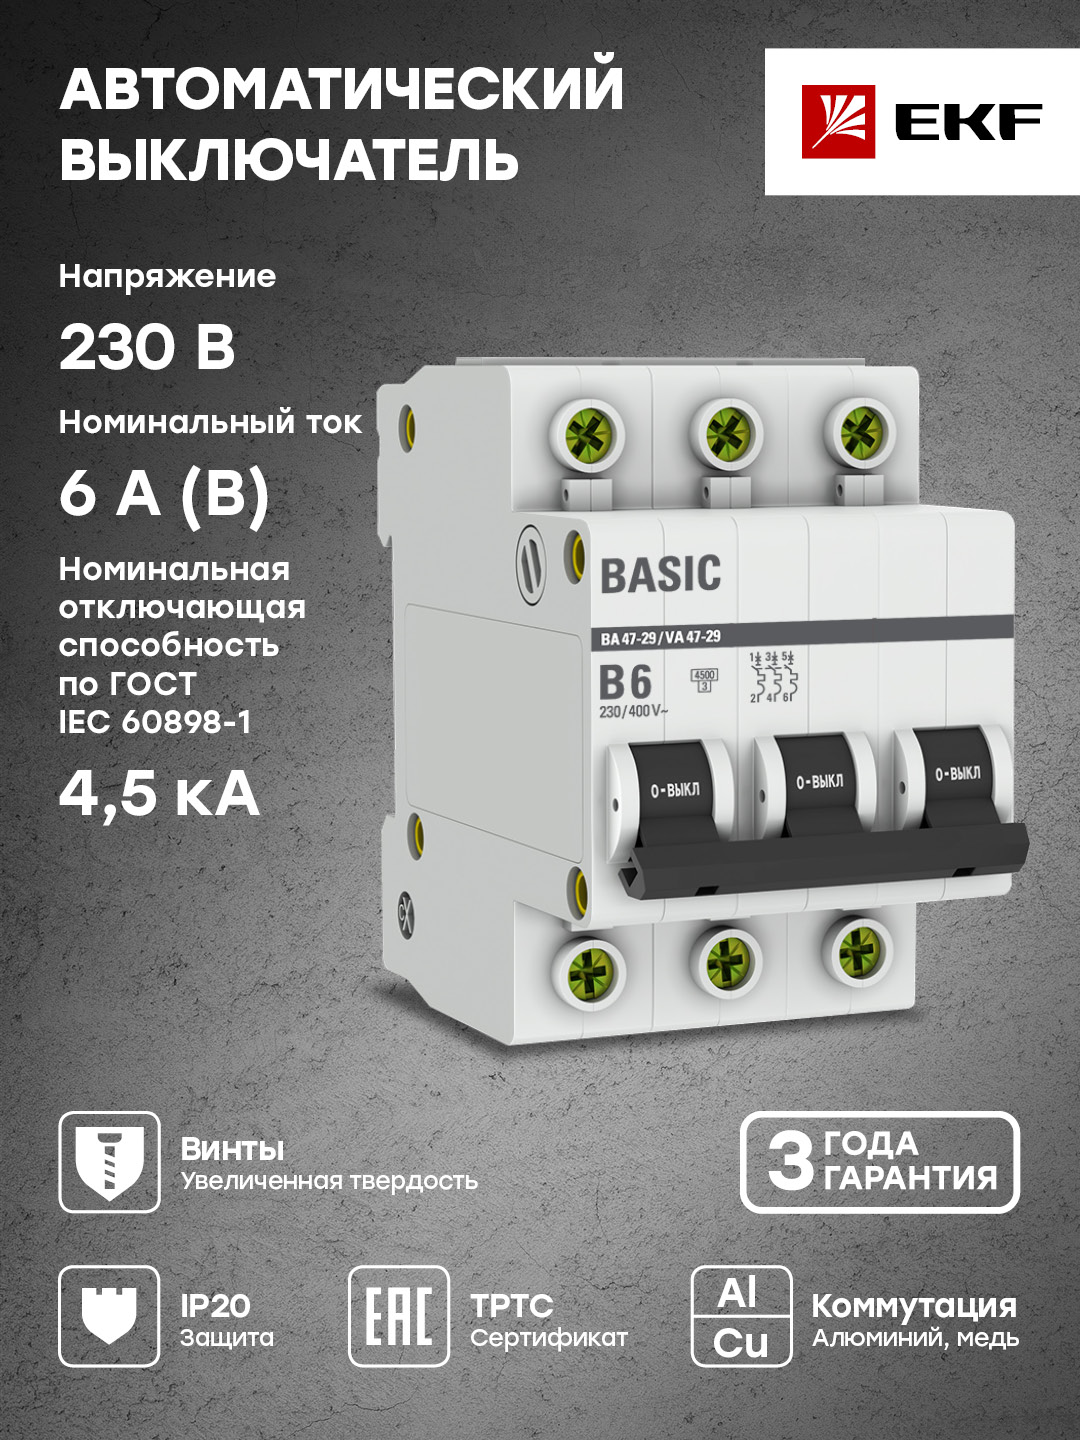 Автоматический выключатель EKF Basic 3P 6А (B) 4,5кА ВА 47-29 mcb4729-3-06-B